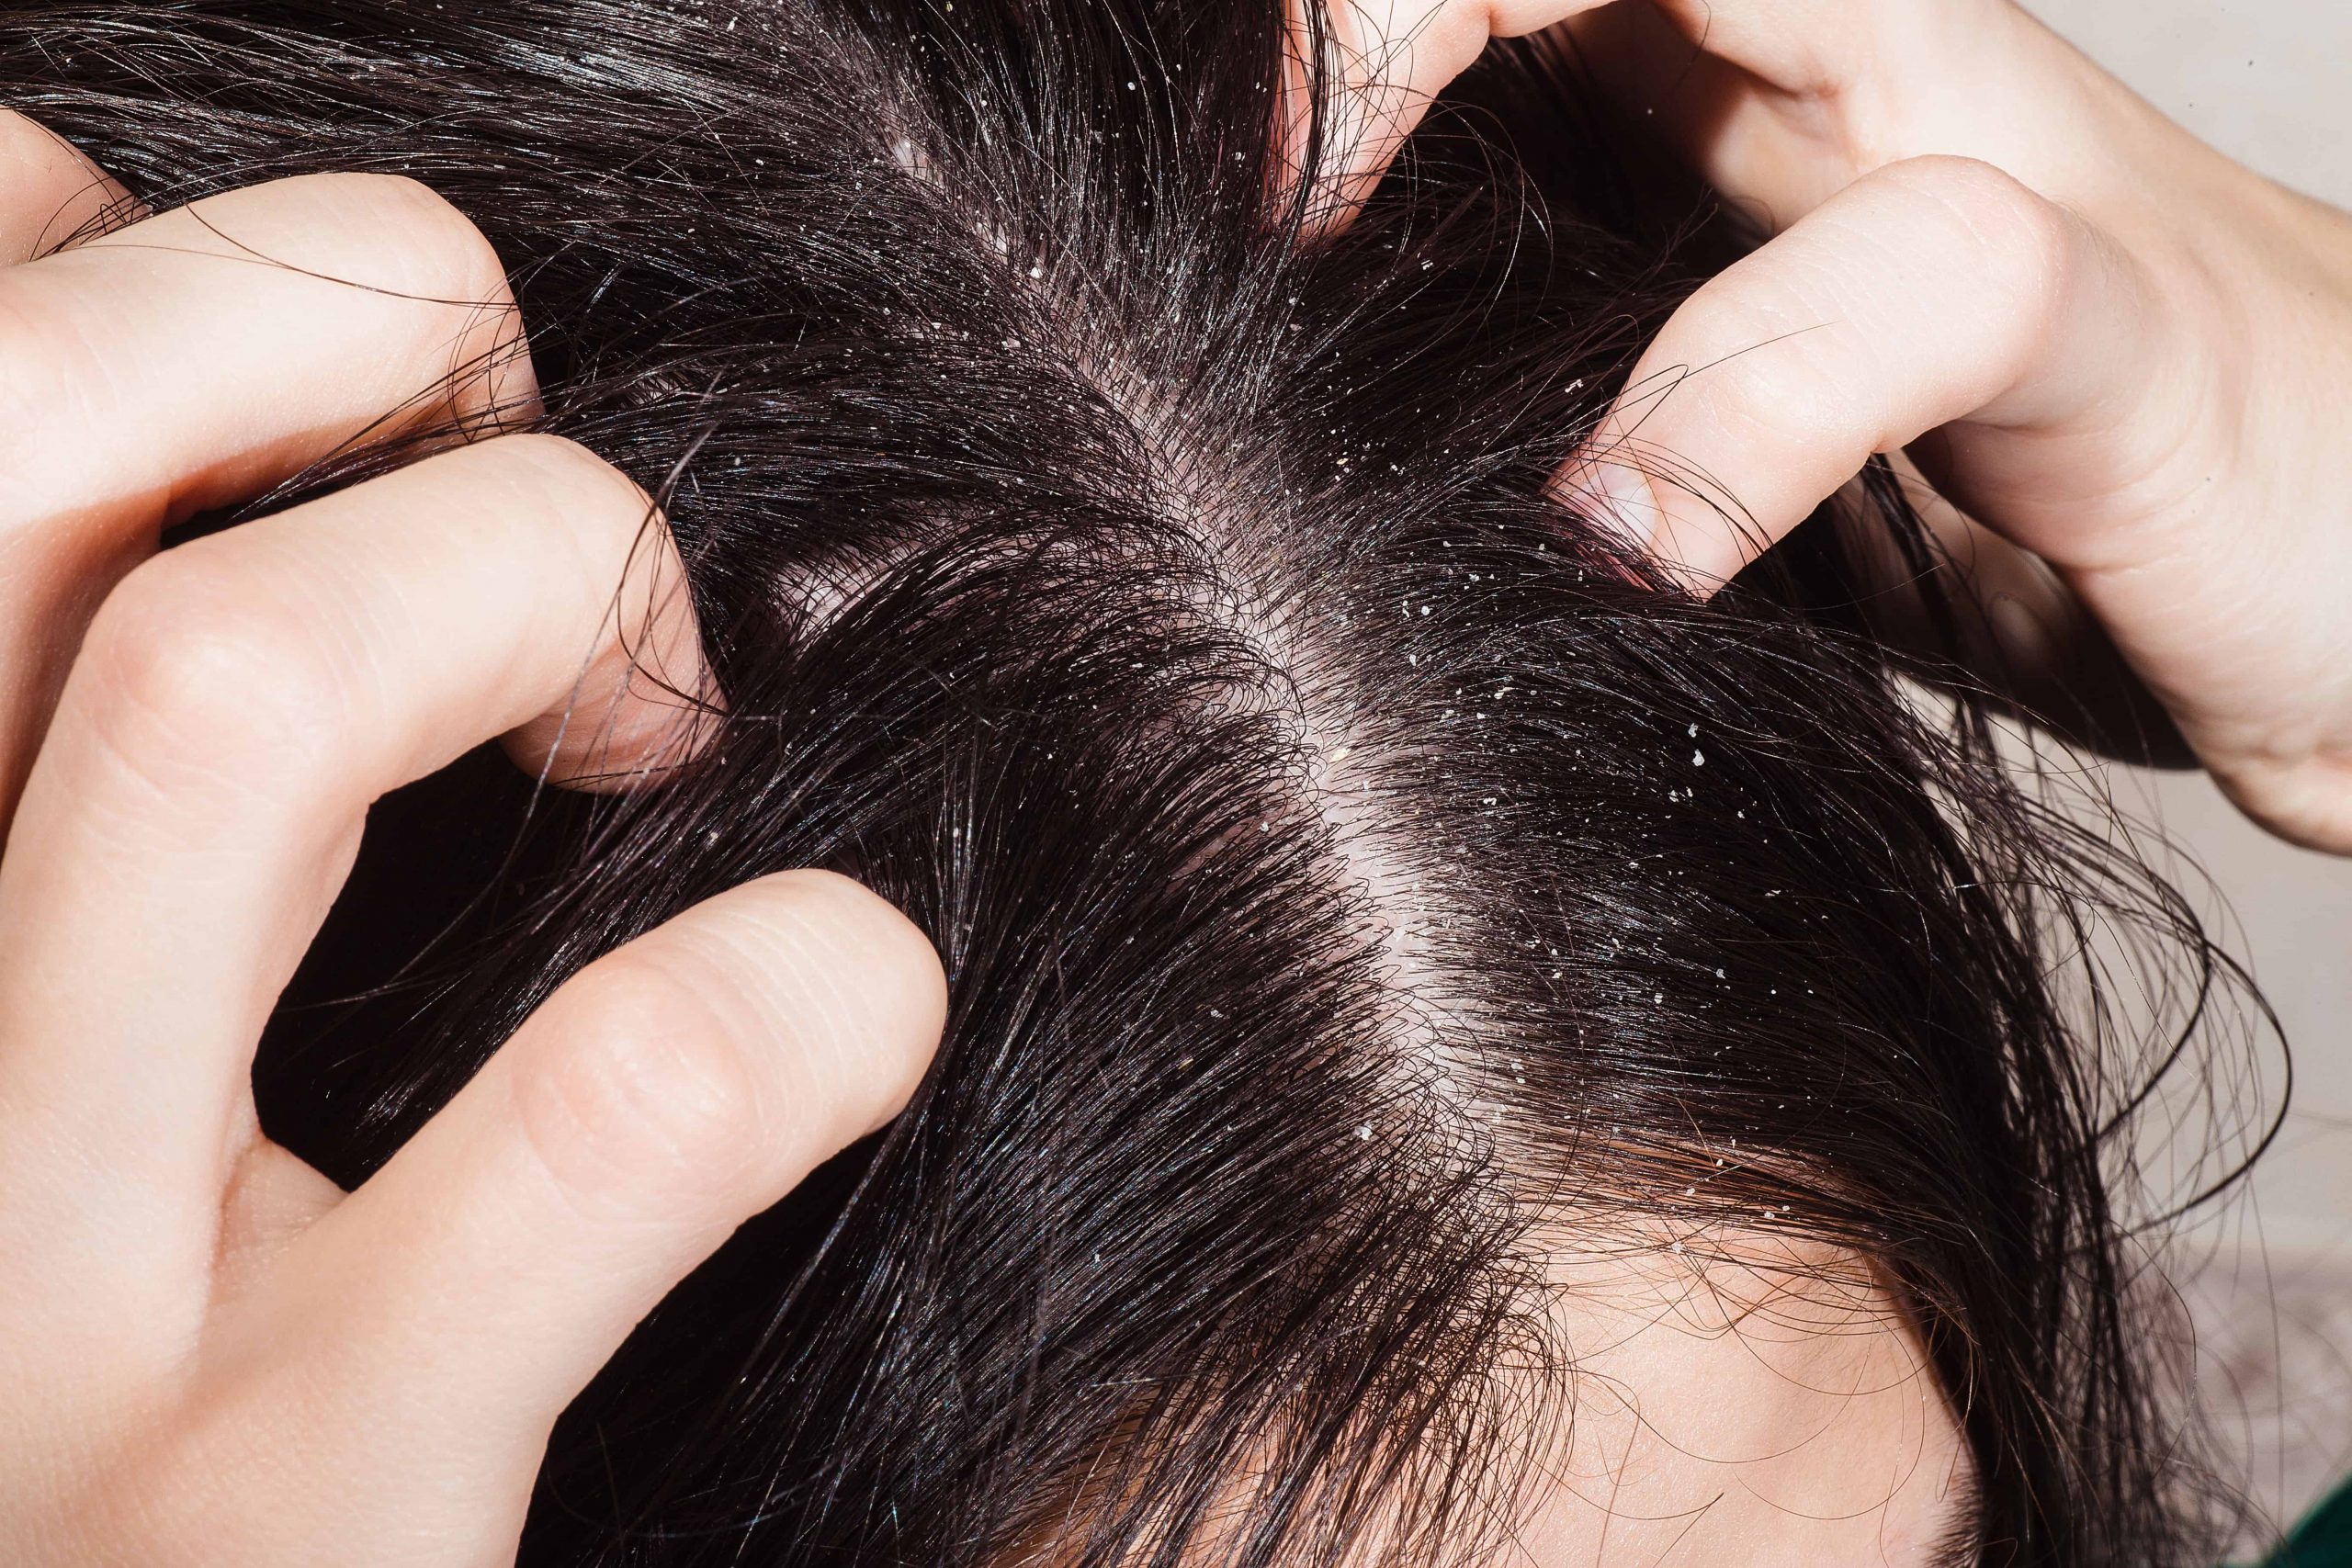 Стали выпадать волосы причины. Себорейный дерматит кожи волосистой части головы. Себорея и себорейный дерматит. Себорея волосяного Покрова.